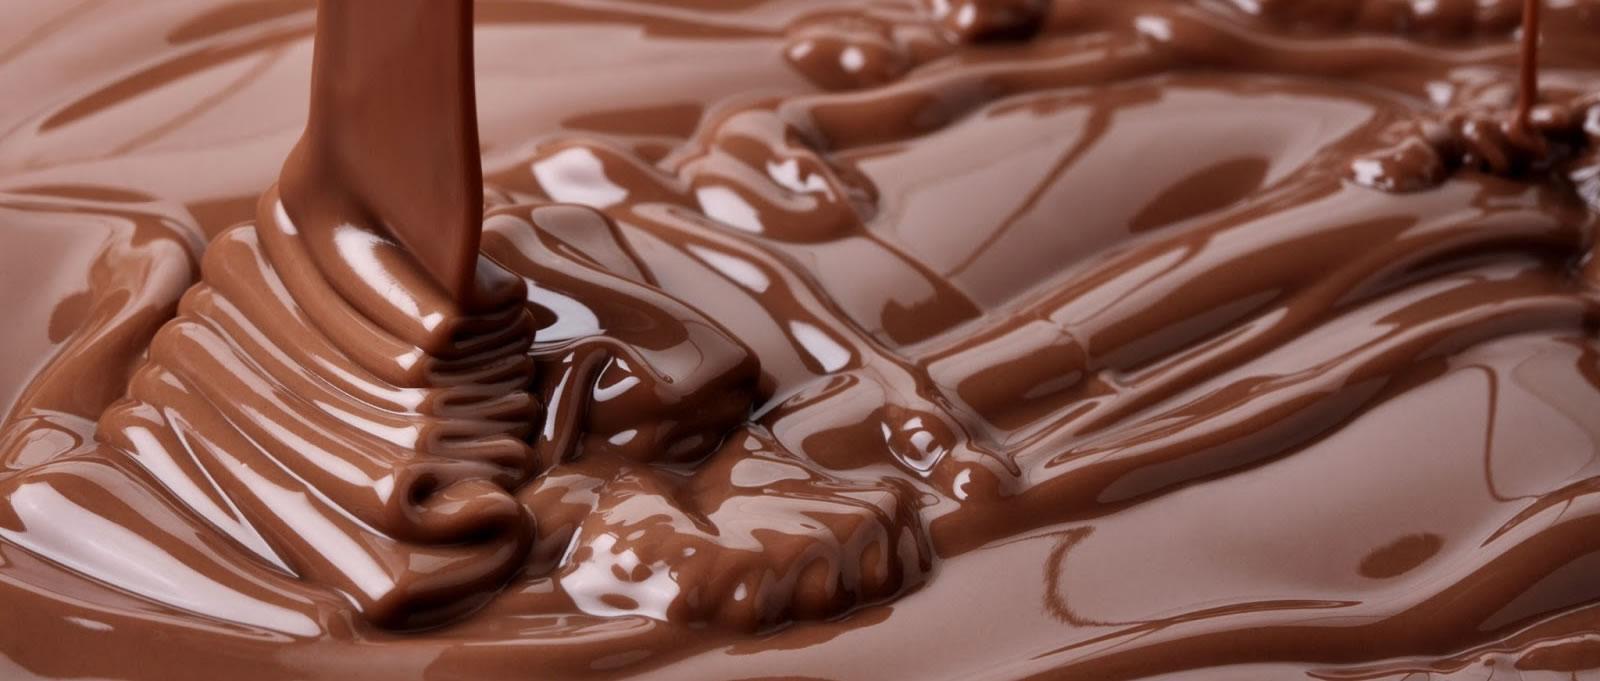 चॉकलेट का सेवन भी दे सकता है खांसी की परेशानी में आराम